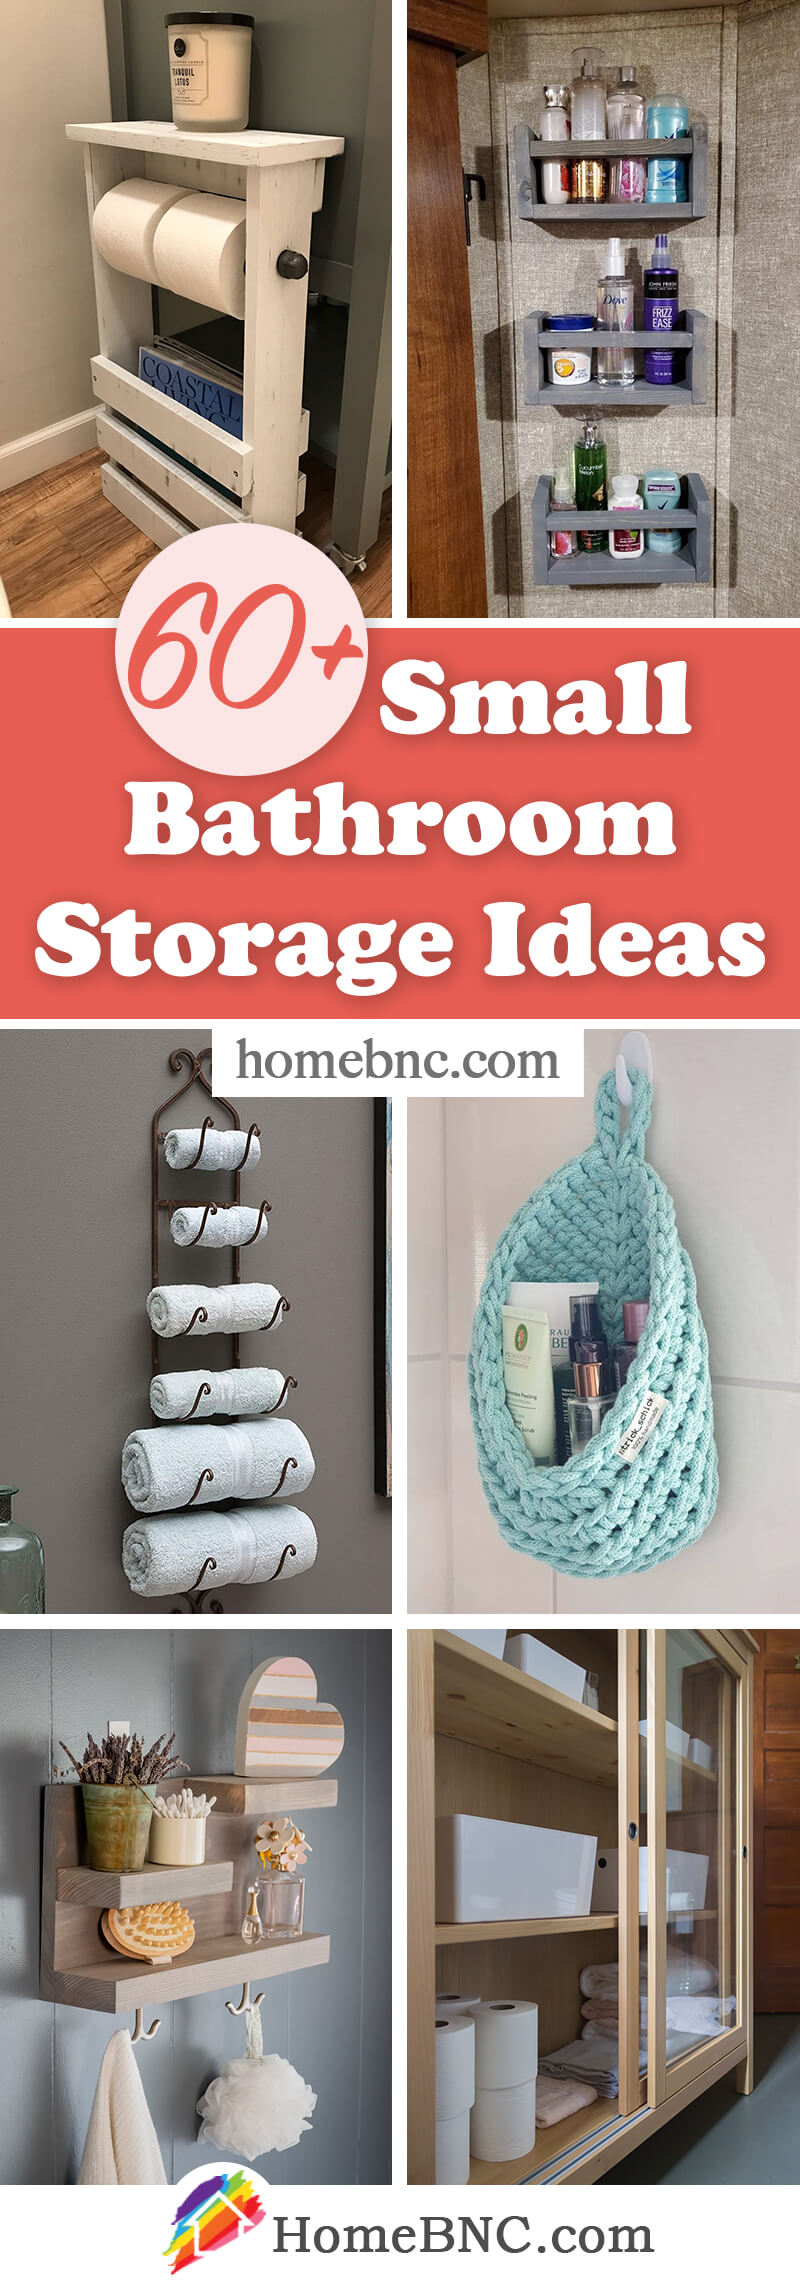 Storage Ideas for Small Bathroom